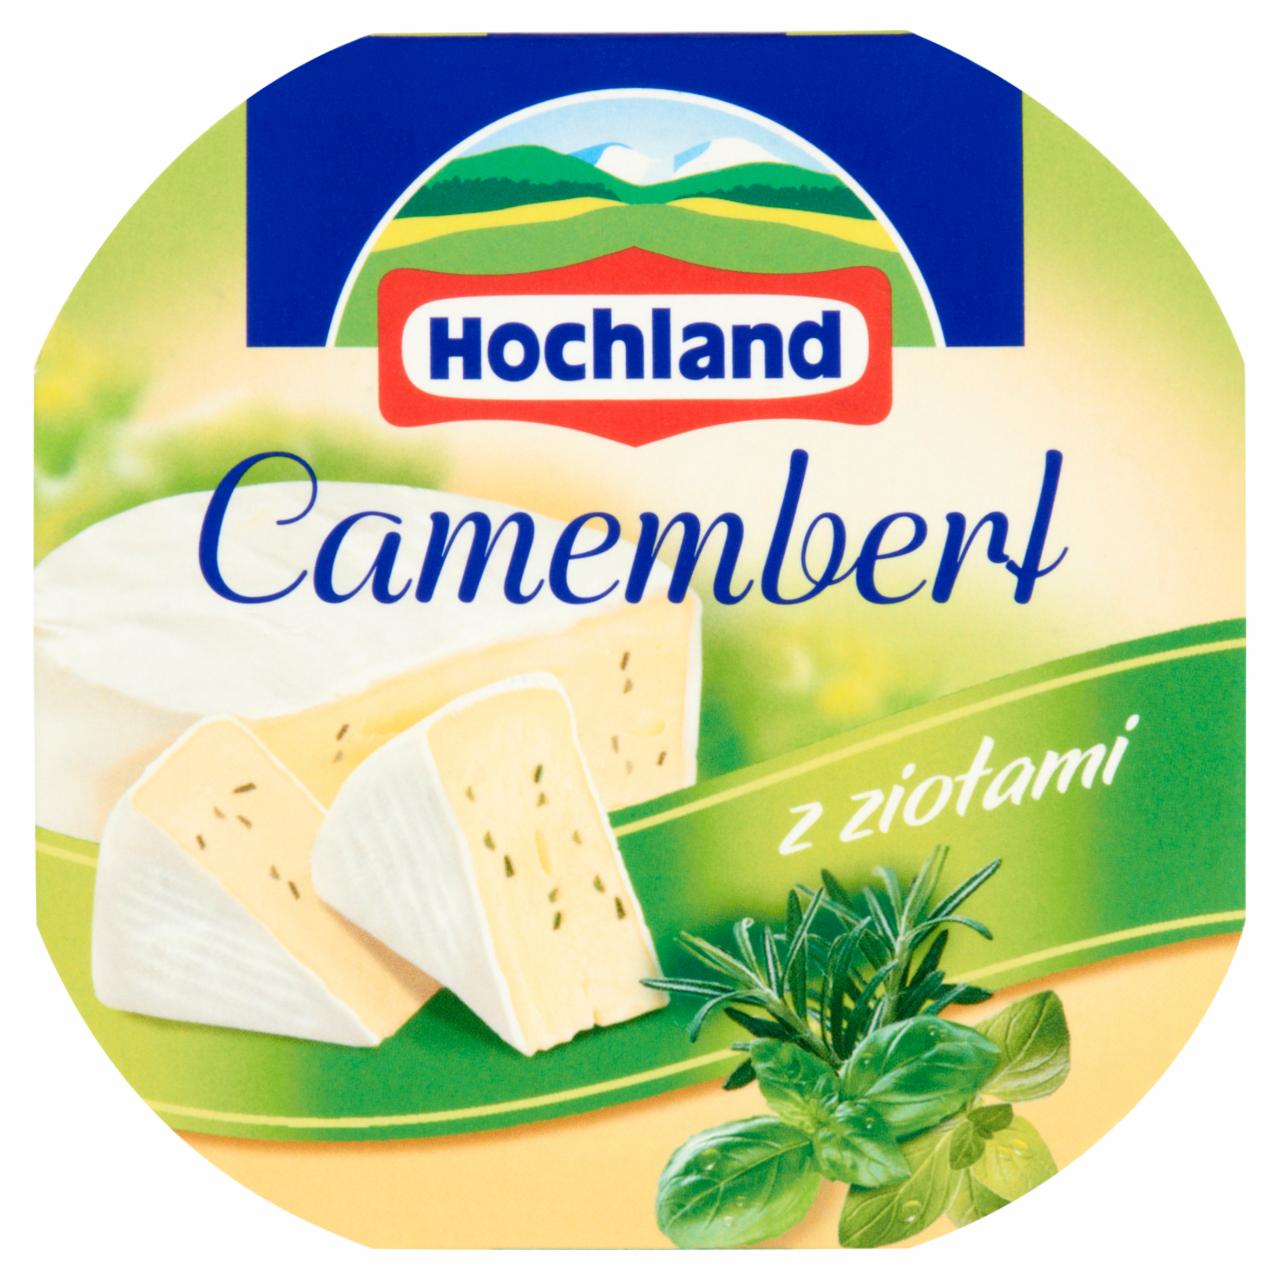 Zdjęcia - Hochland Camembert z ziołami Ser 120 g